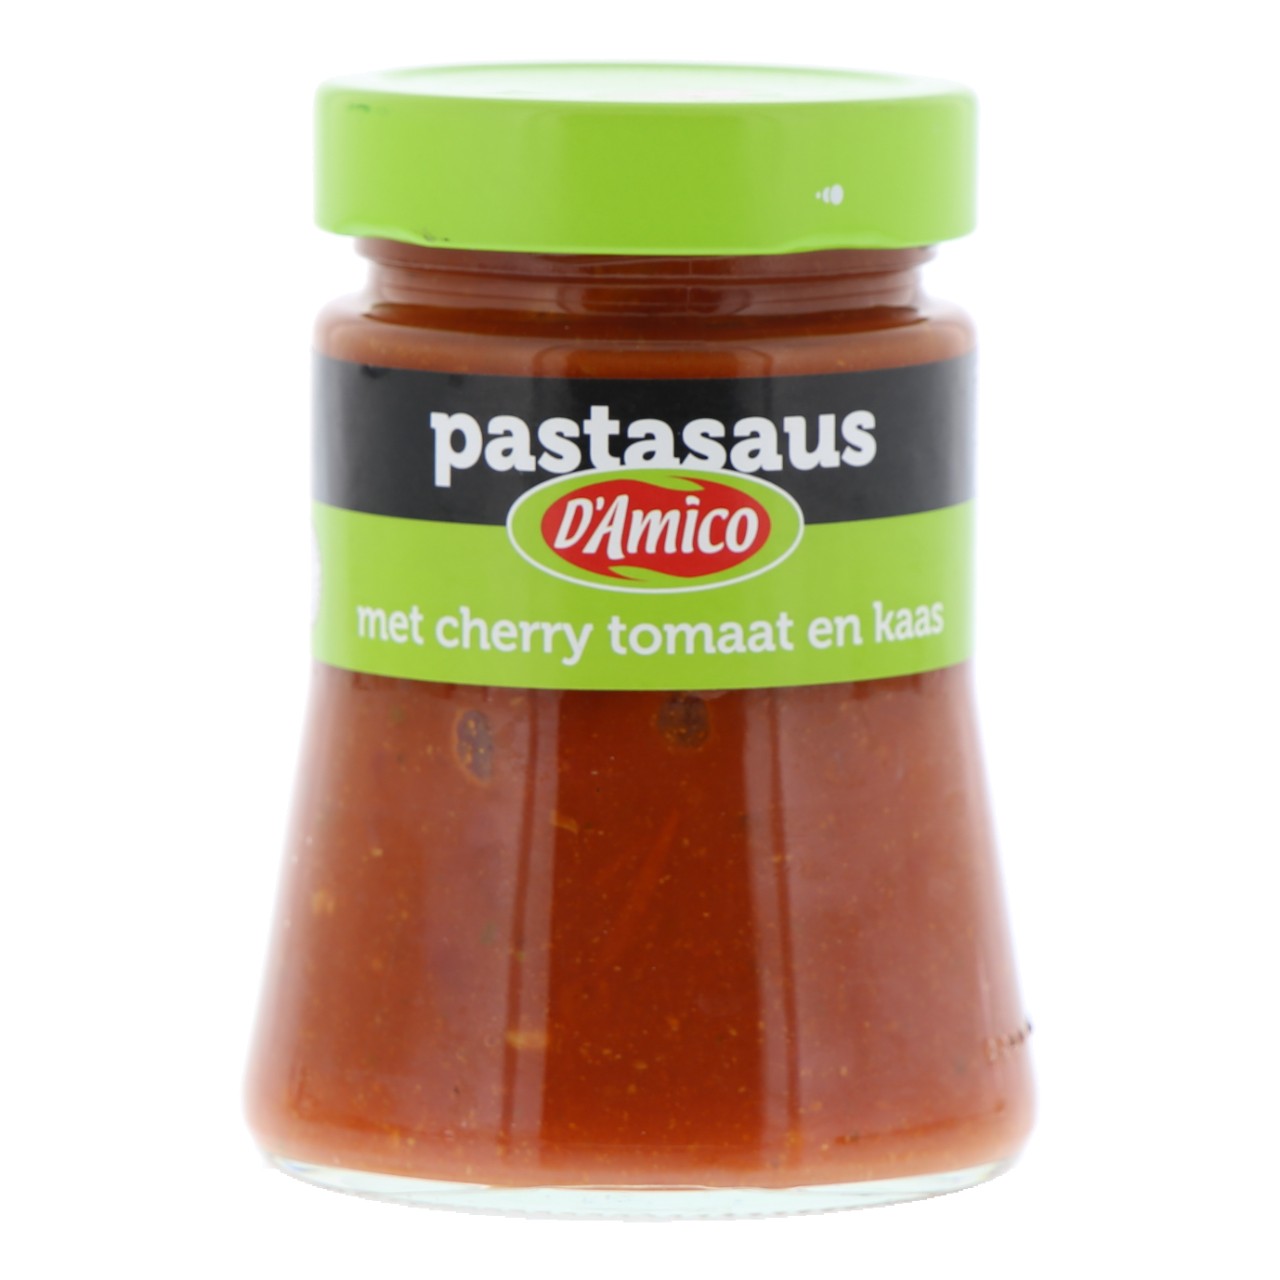 Pastasaus met cherry tomaat en kaas